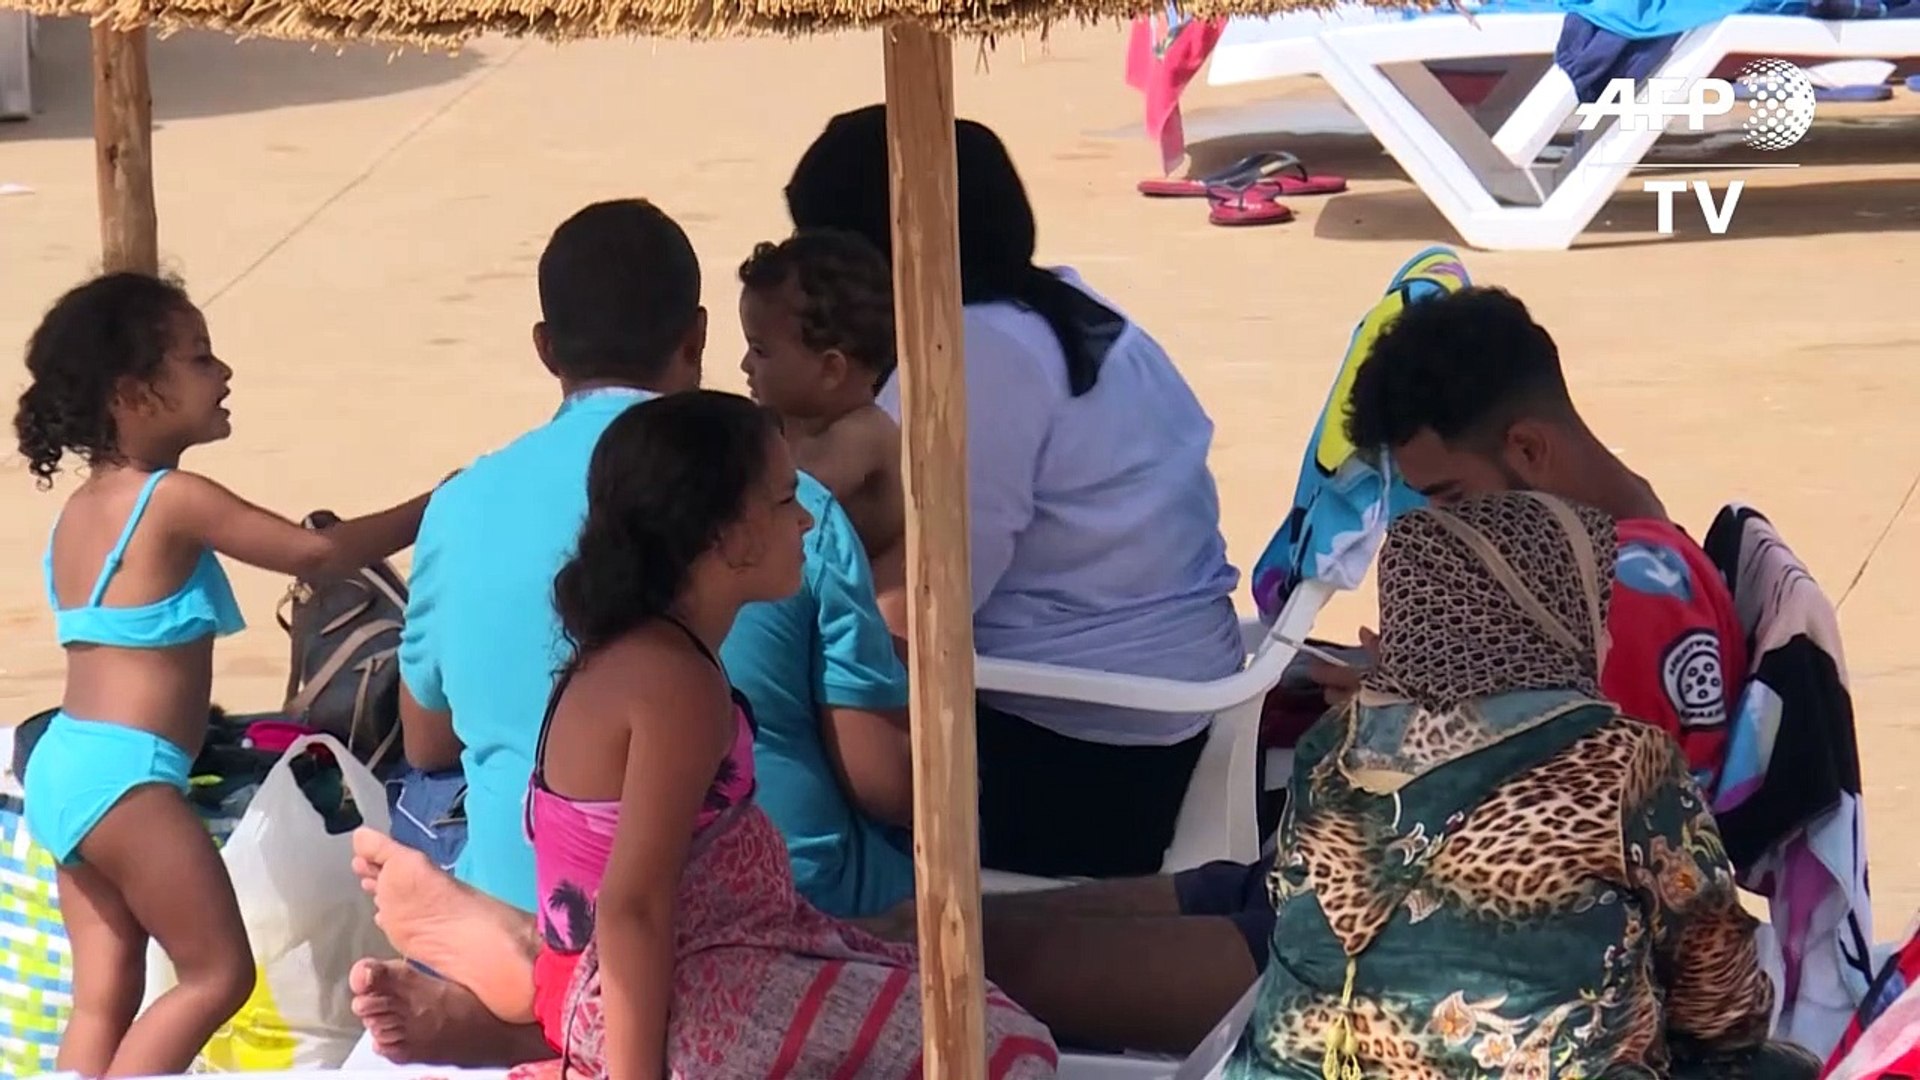 مسبح يقدم هامش حرية للنساء في المغرب حيث ملابس السباحة تتسبب بمضايقات -  Vidéo Dailymotion